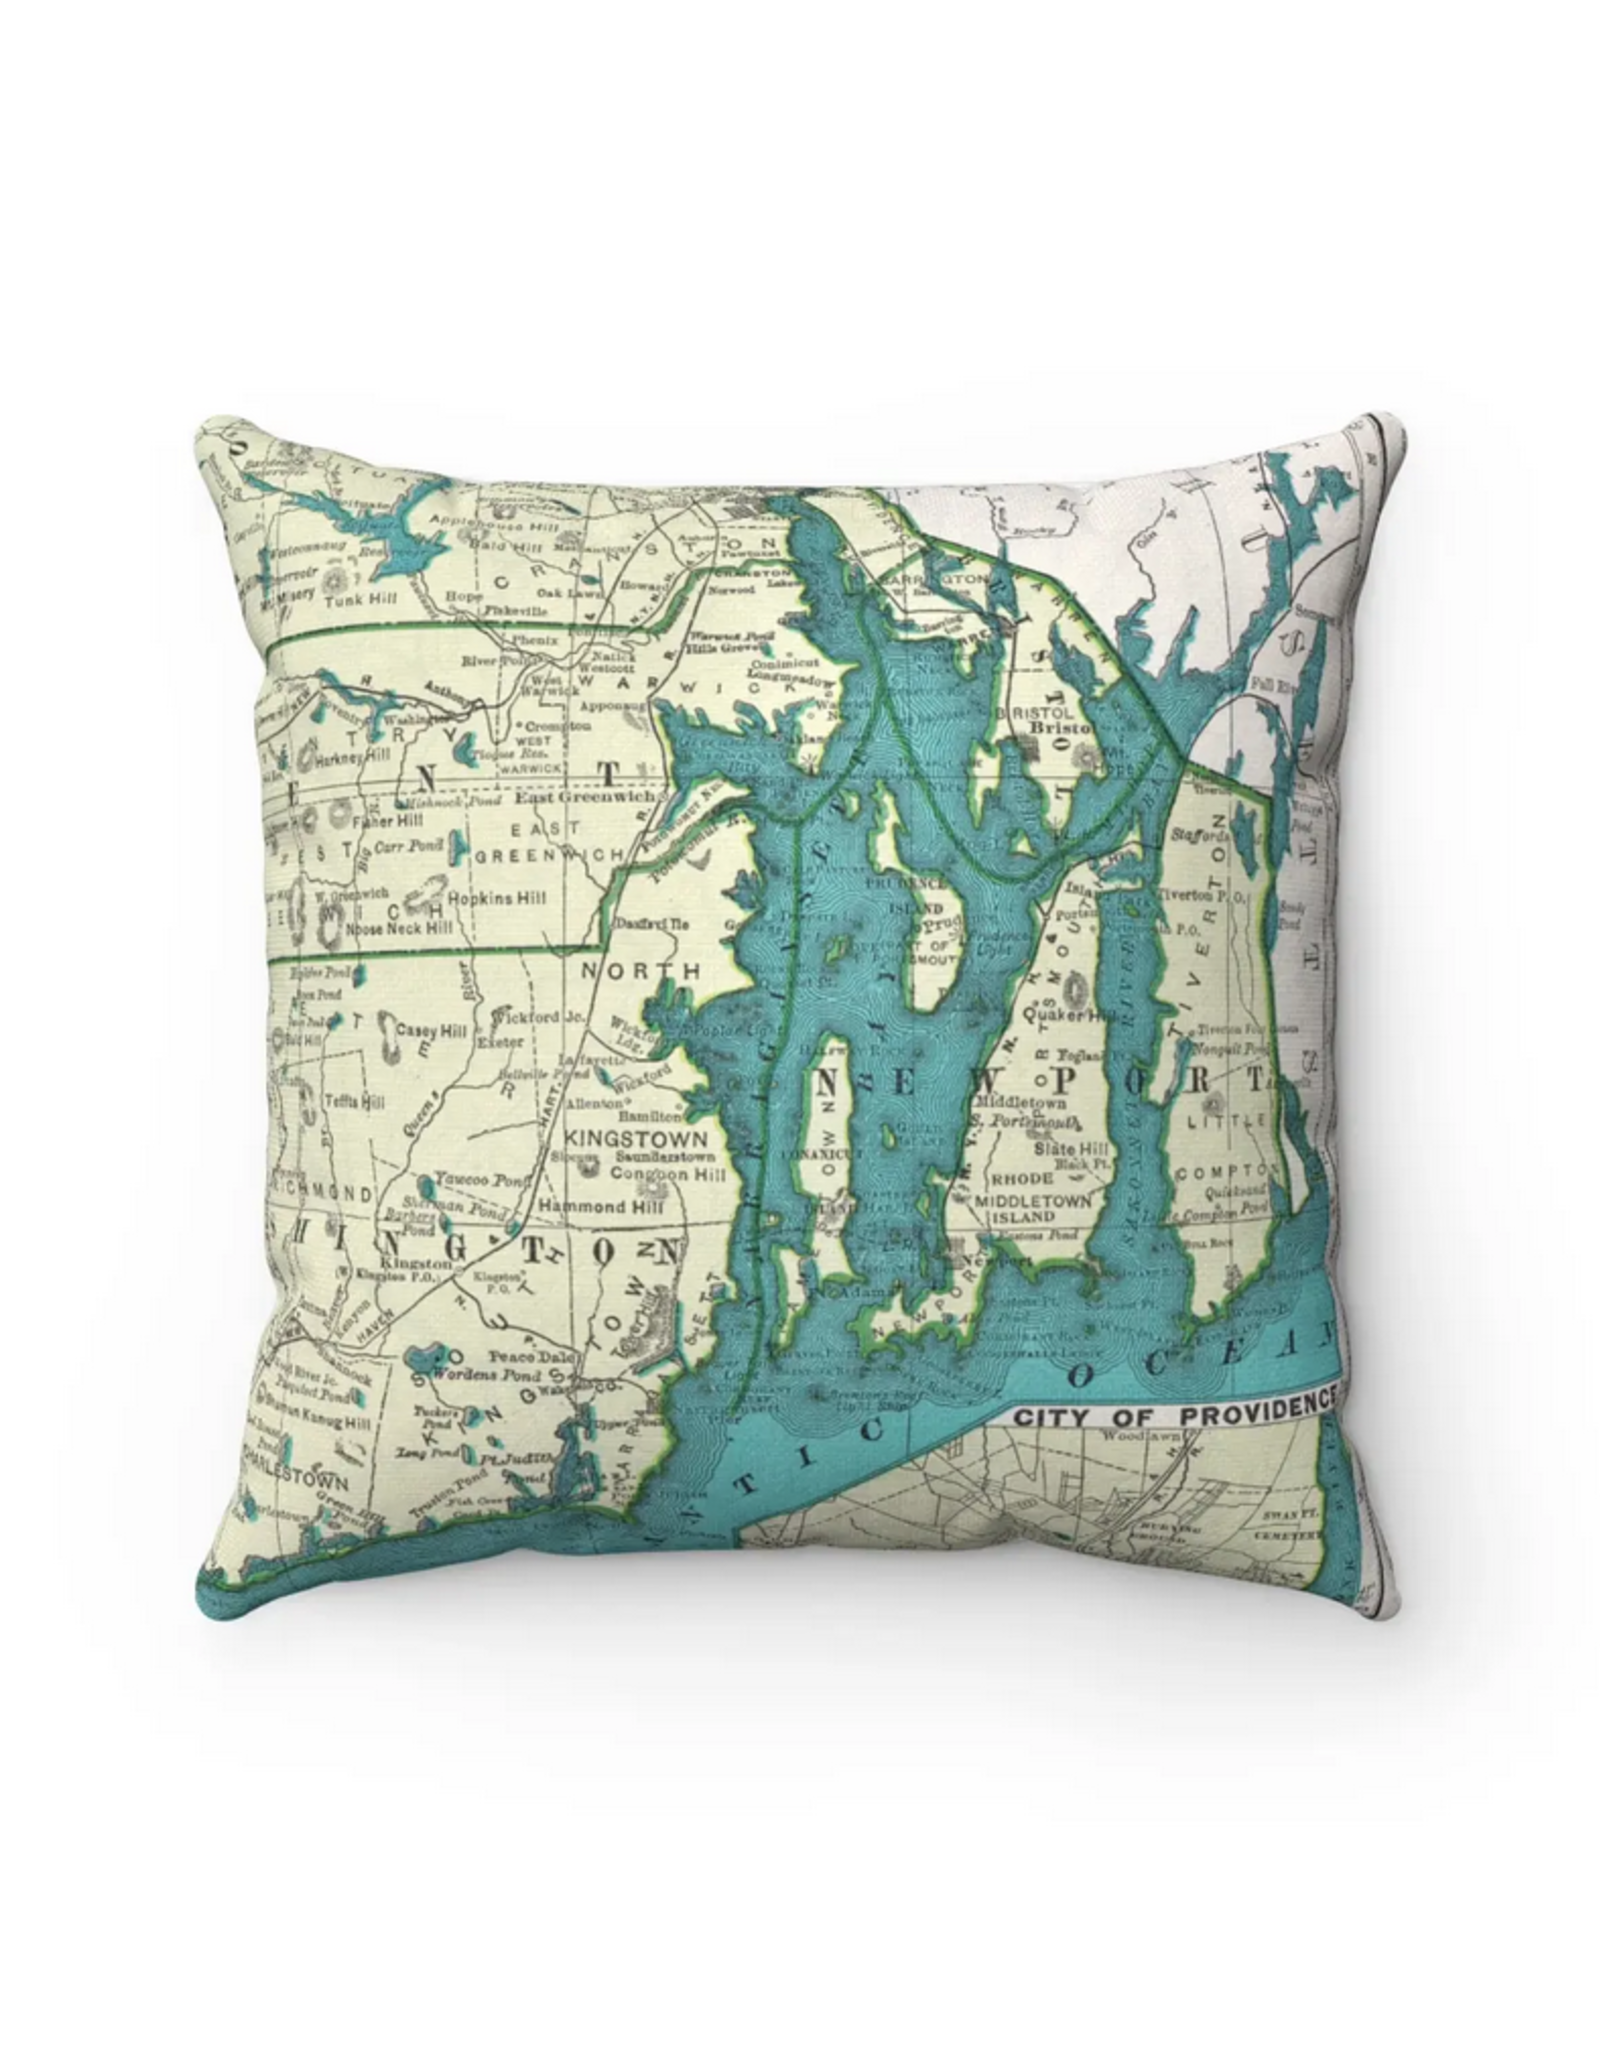 Narragansett Bay Map Pillow